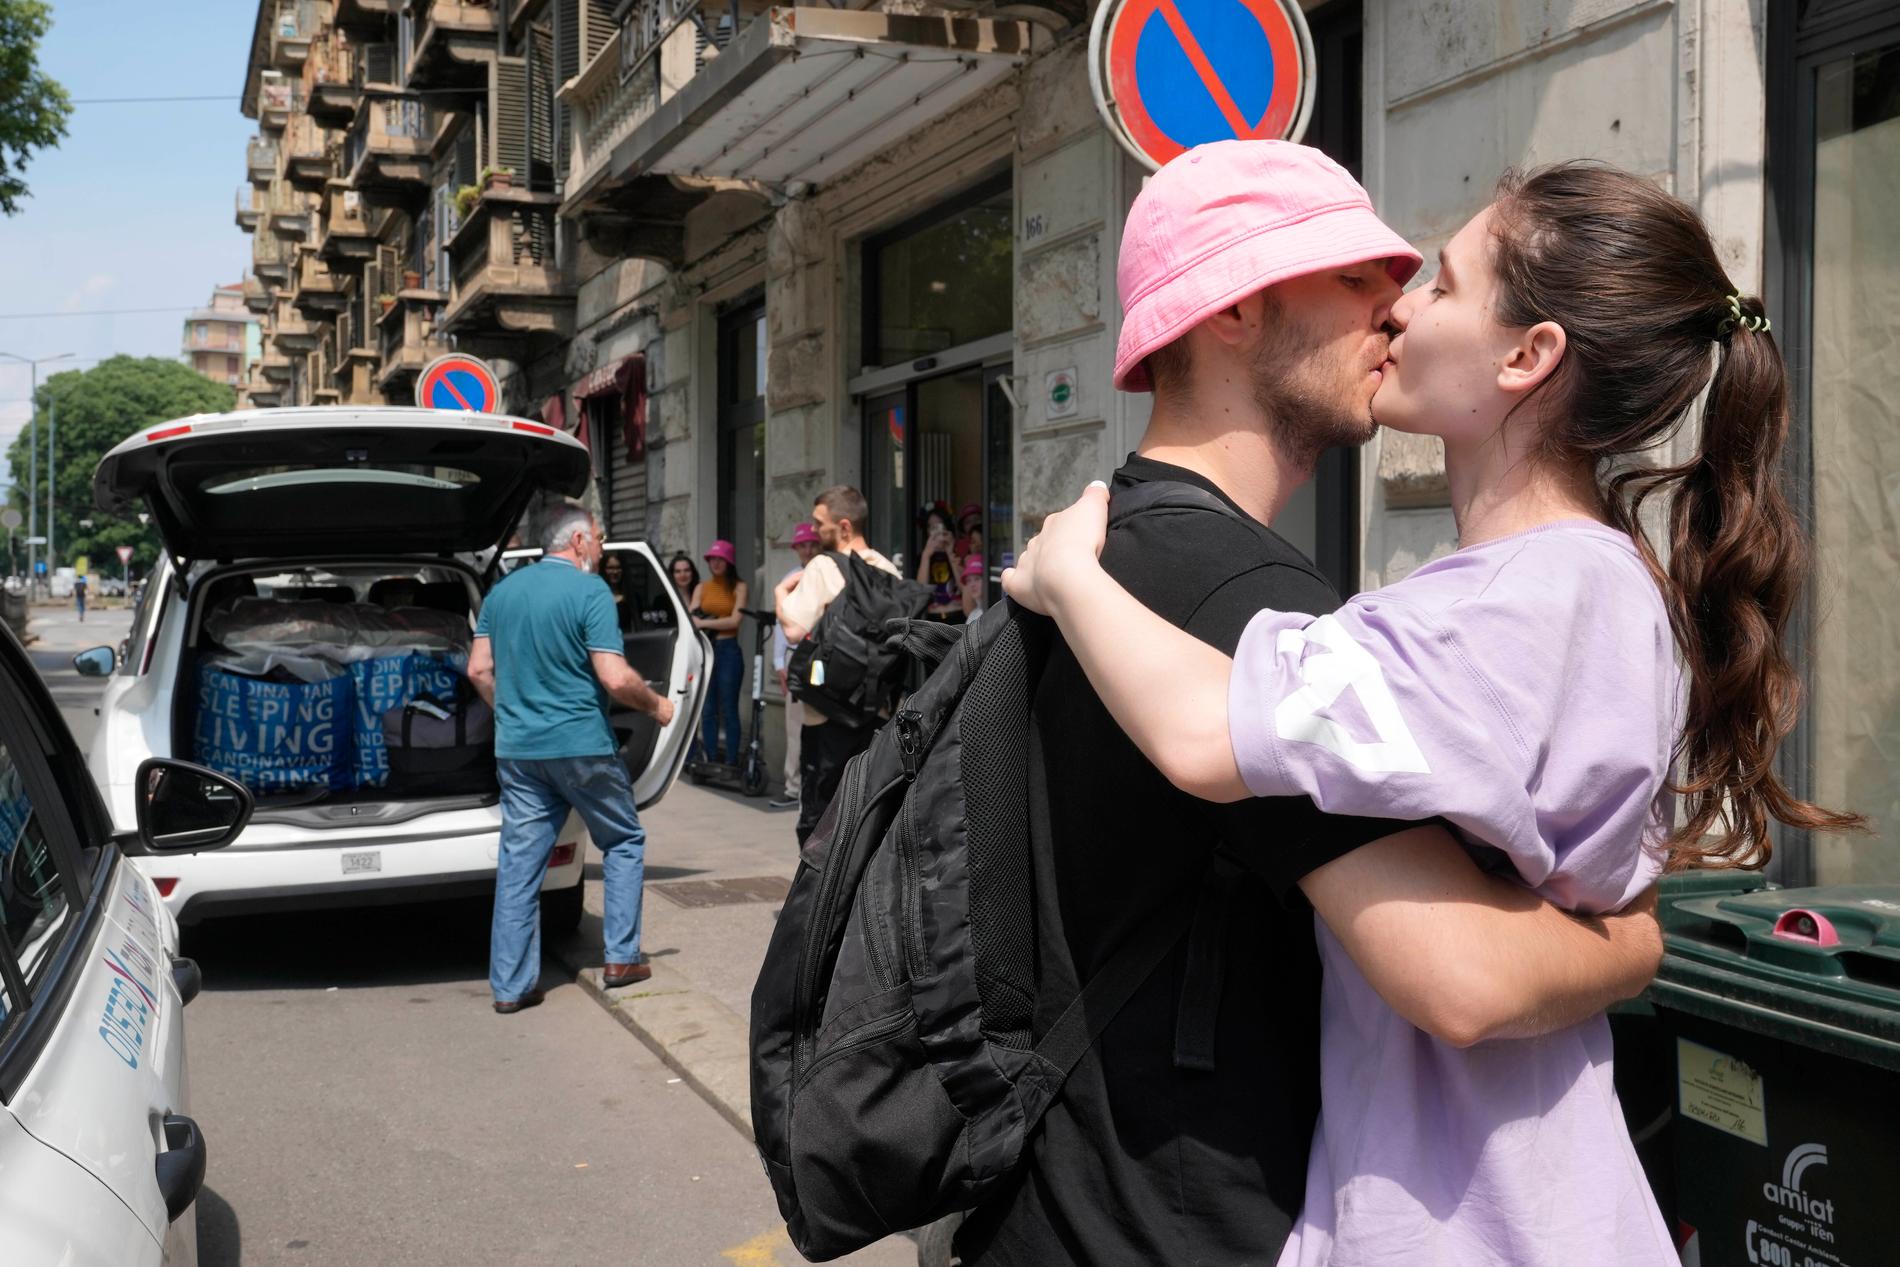 Oleh Psiuk kysser flickvännen Oleksandra farväl.